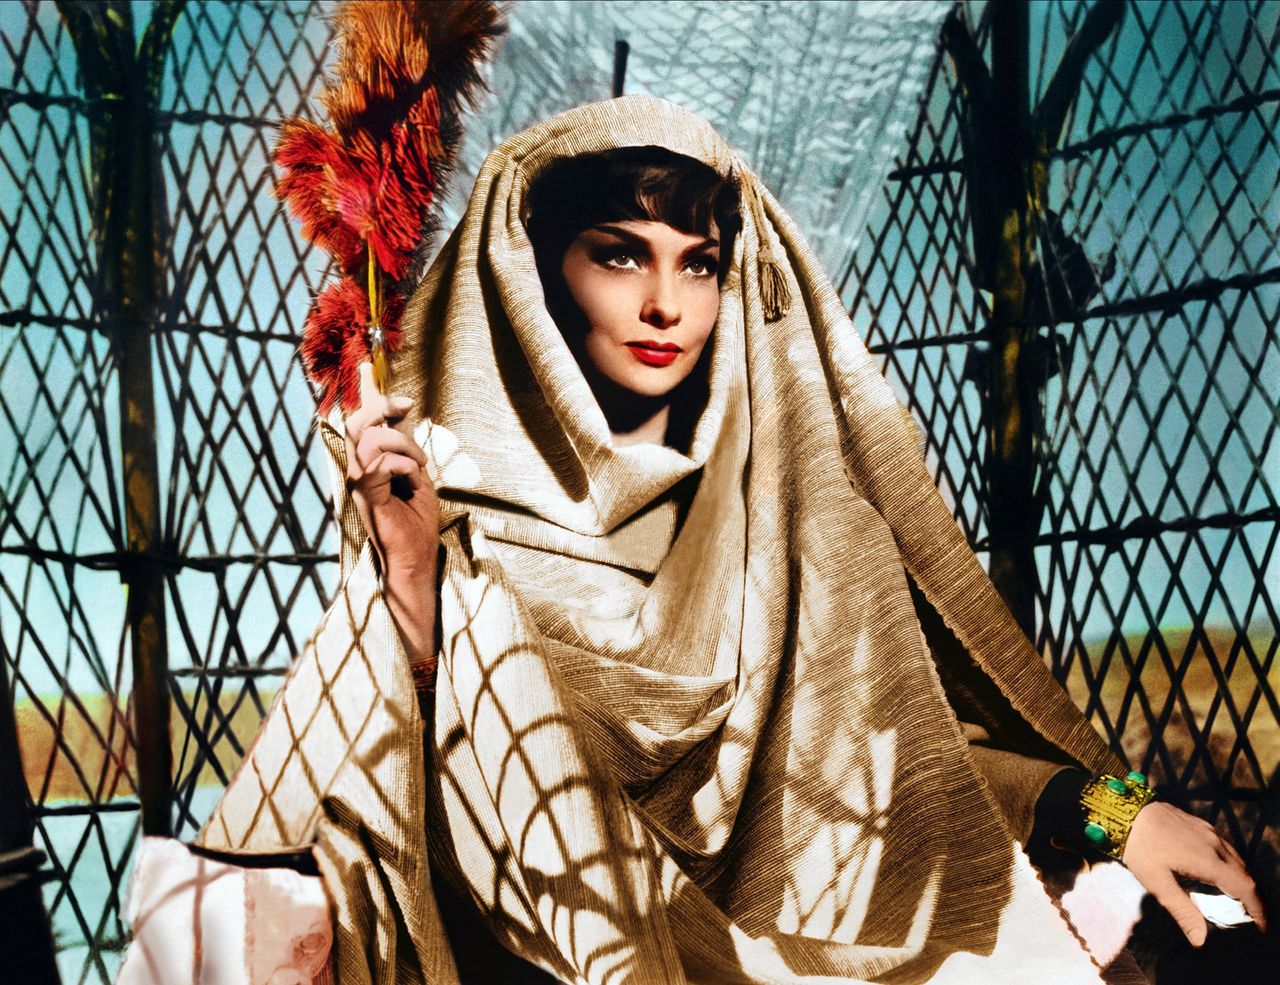 Gina Lollobrigida als de koningin van Sheba in het bijbelepos ‘Solomon and Sheba’ (1959).